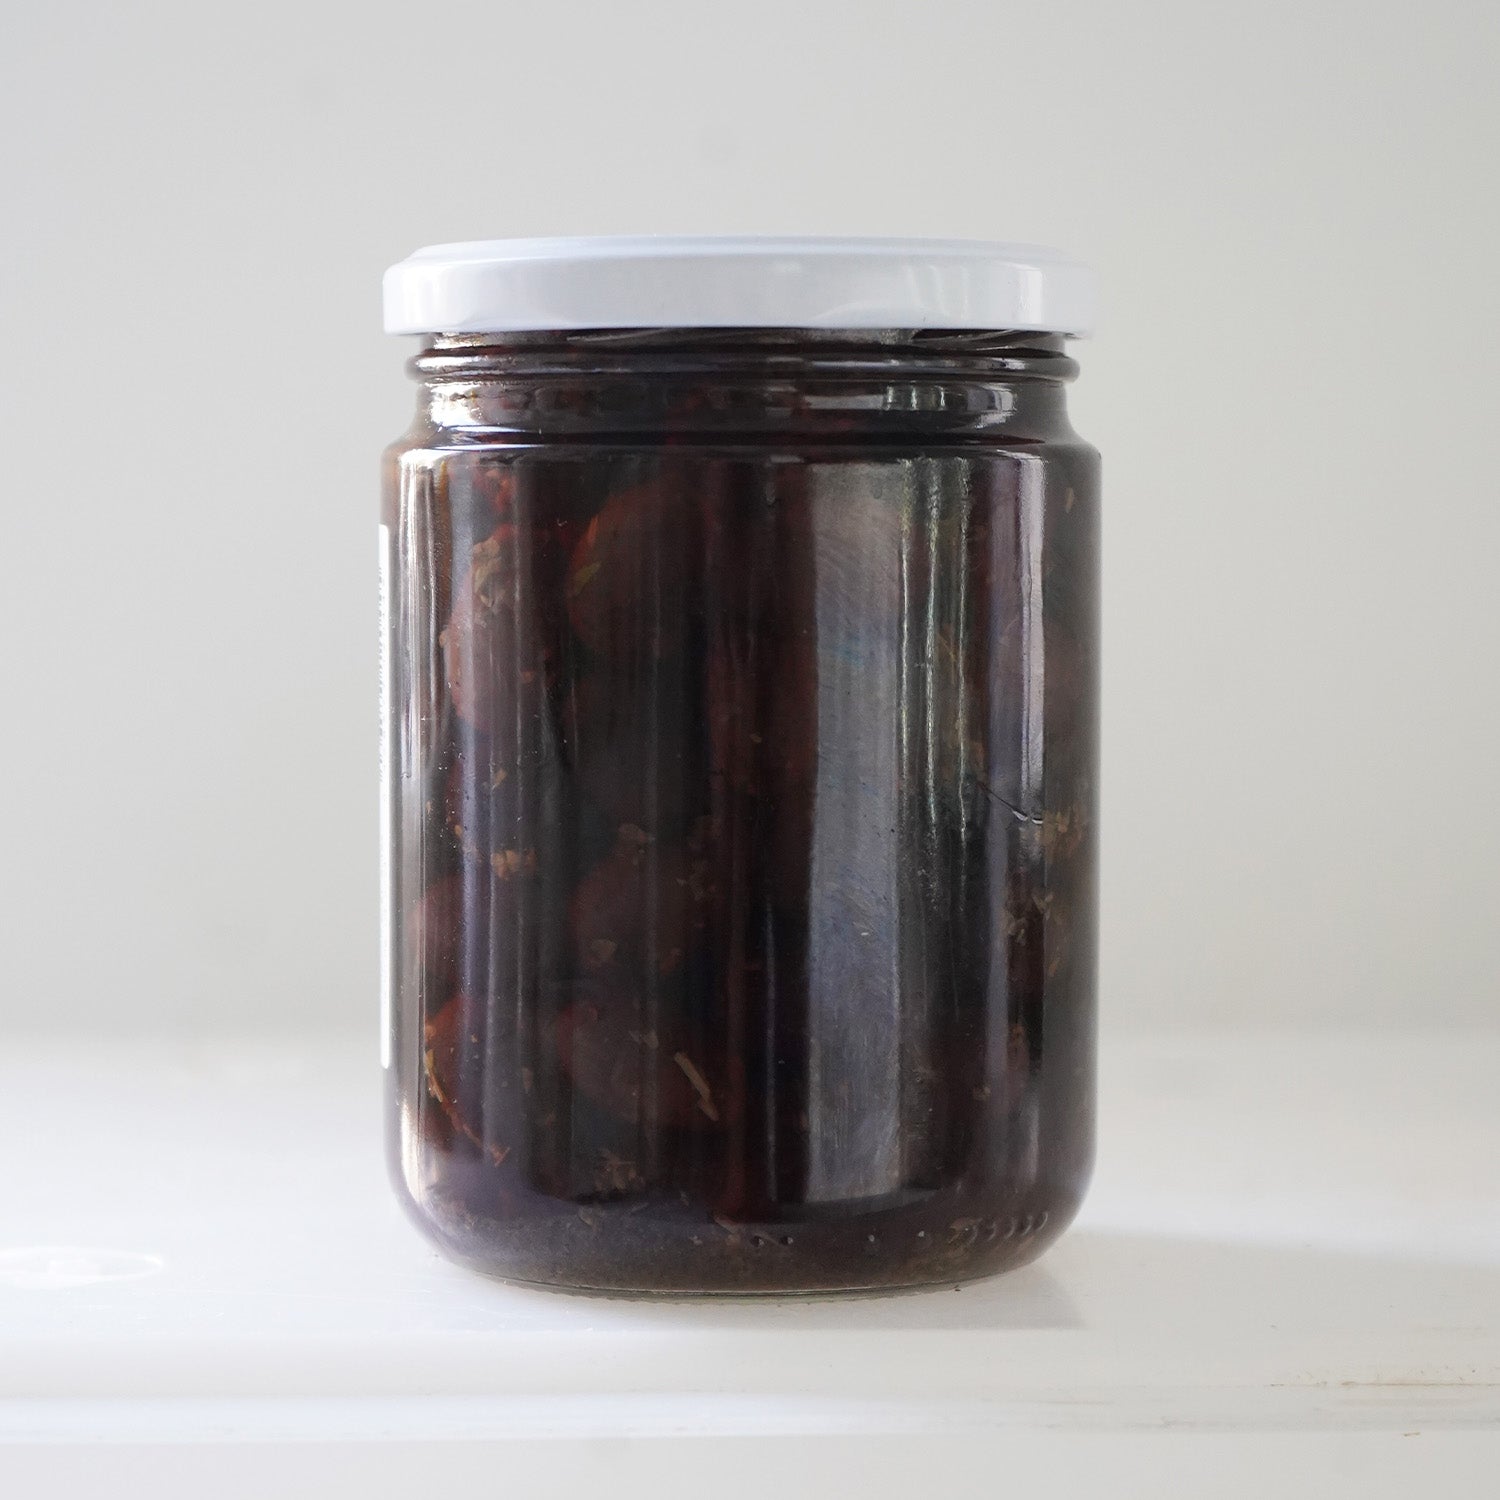 Reverso tarro de cristal aceitunas negras picantes ecológicas